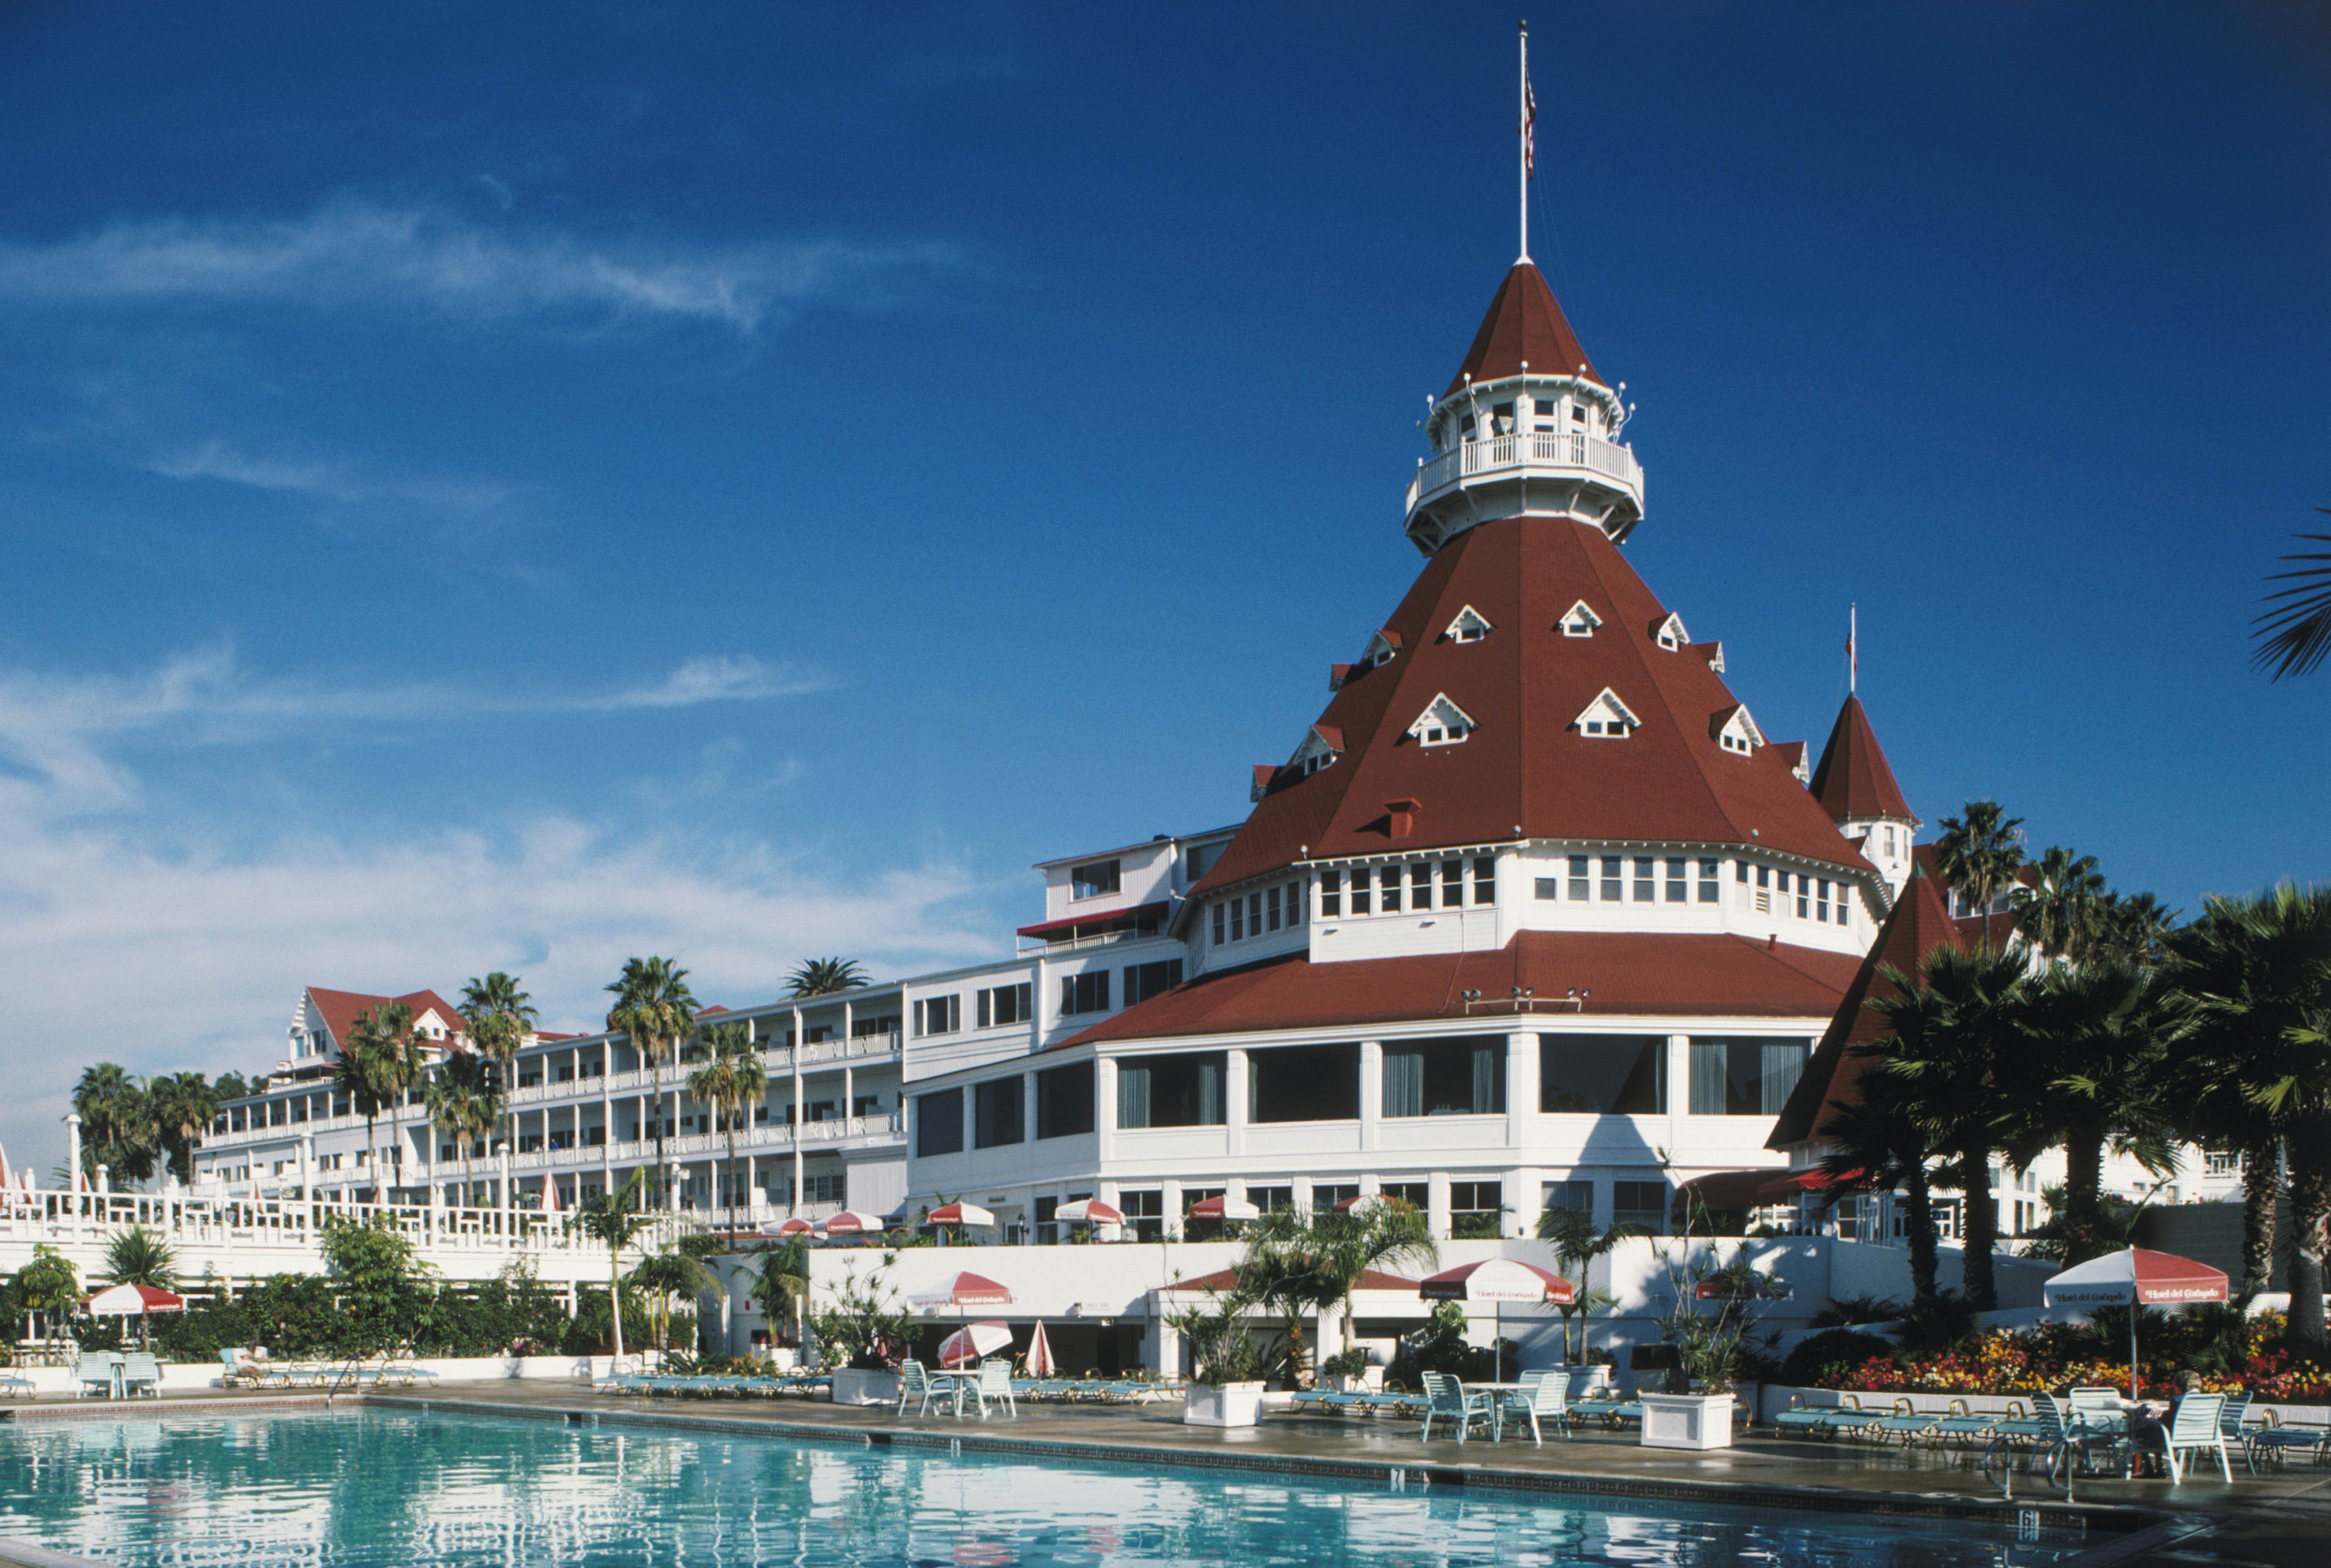 Hotel del Coronado San Diego, California Attractions Lonely